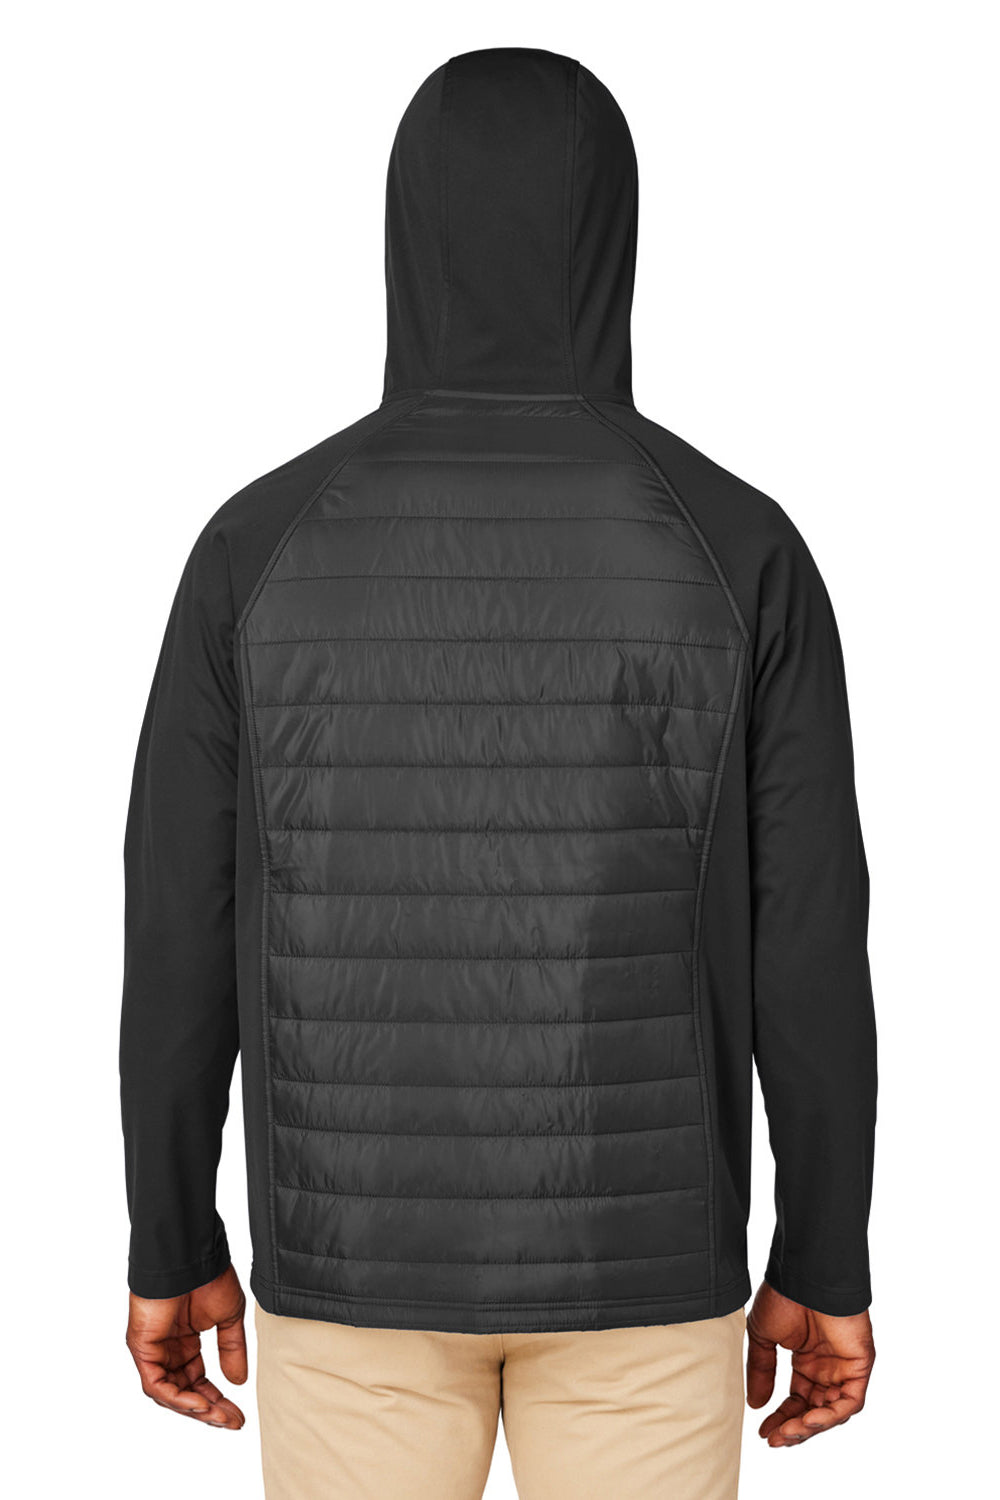 Core 365 CE808 Mens Techno Lite Hybrid Full Zip Hooded Jacket Black Back